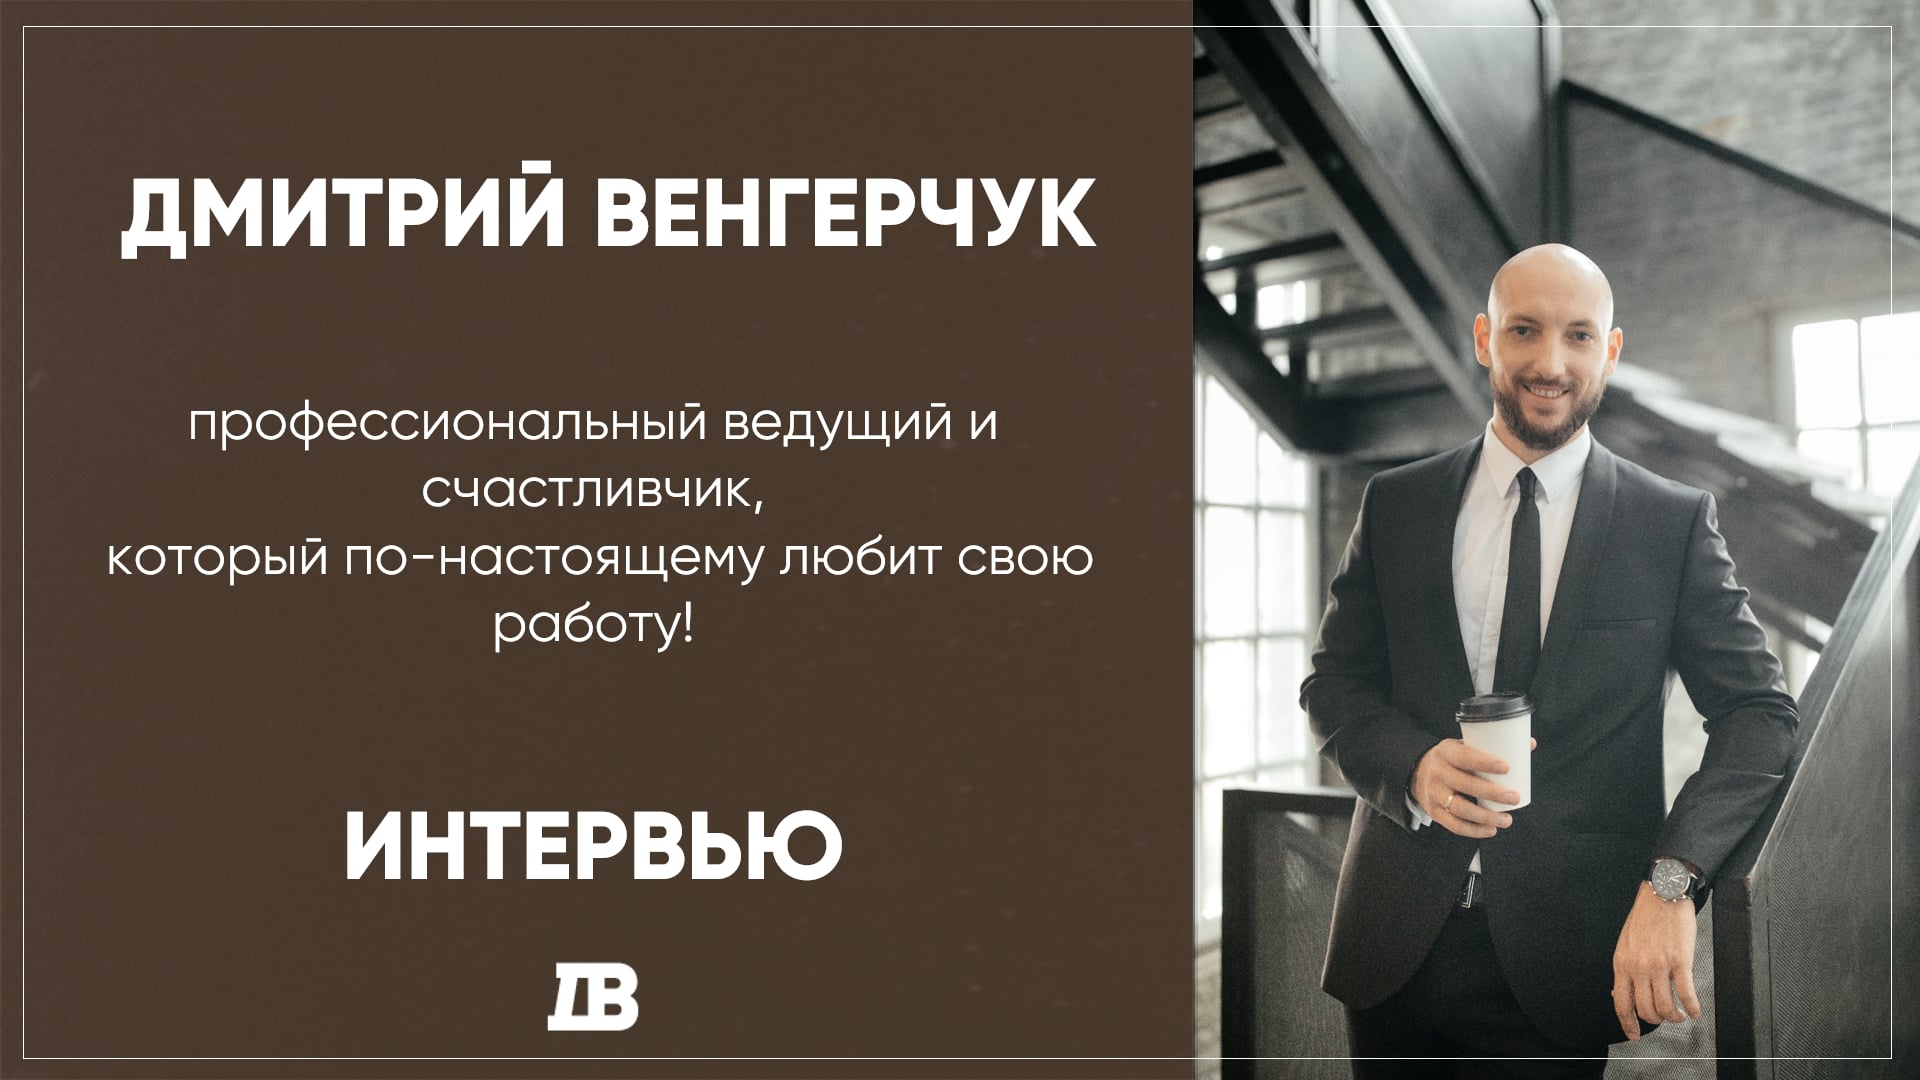 Дмитрий Венгерчук - ведущий на свадьбу, шоумен - интервью 2020